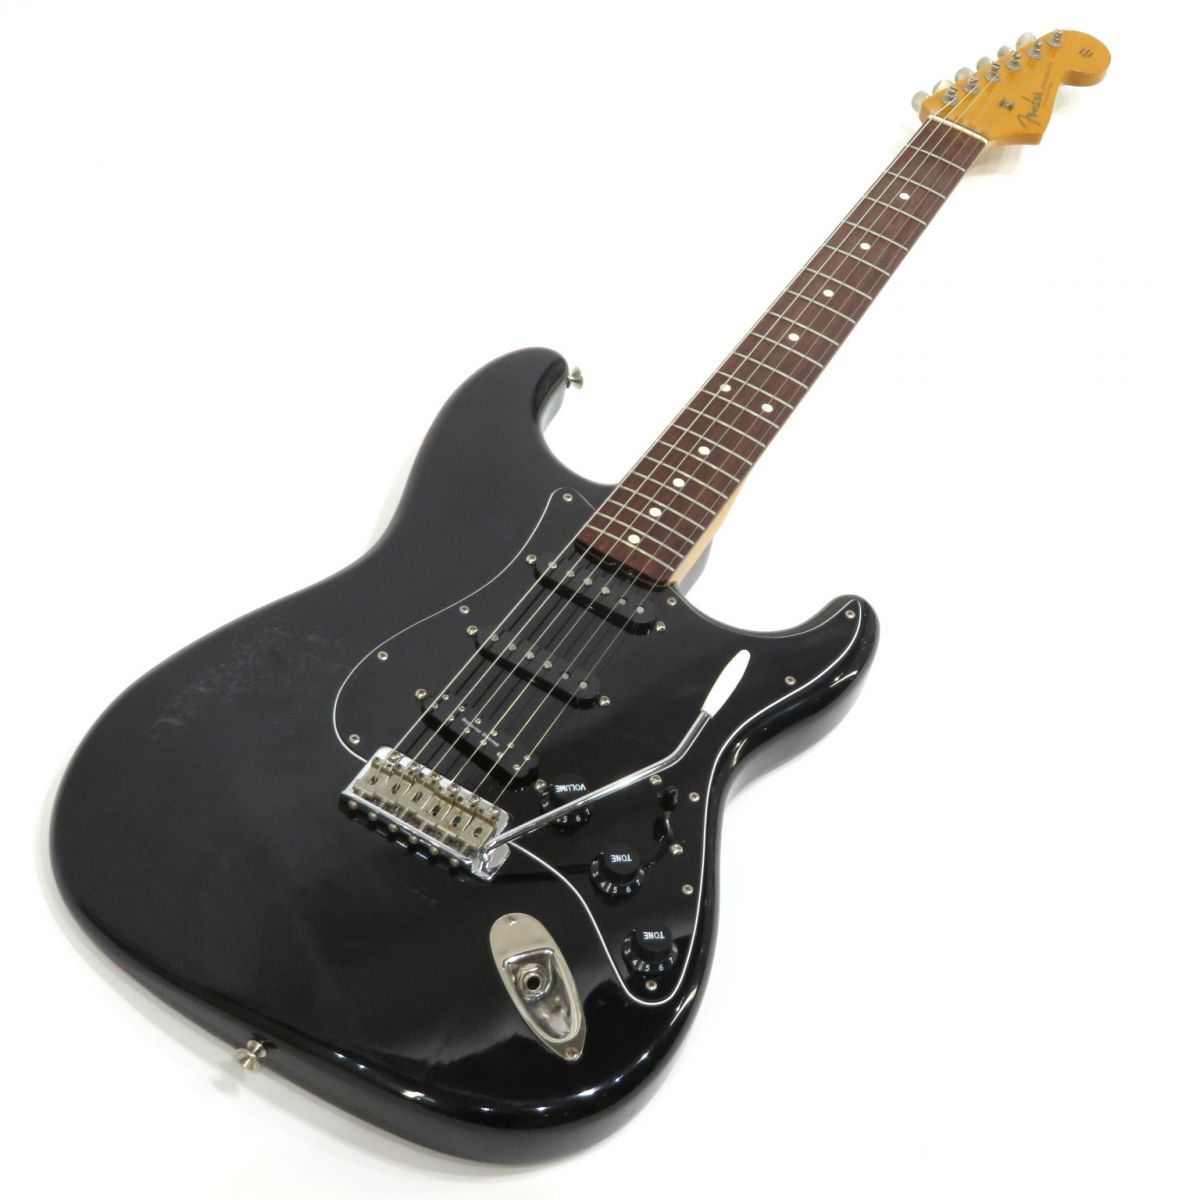 Fender Japan【ST62 Mod】ブラック【中古/エレキギター/ストラトキャスター/Eシリアル/フェンダージャパン】岡山店